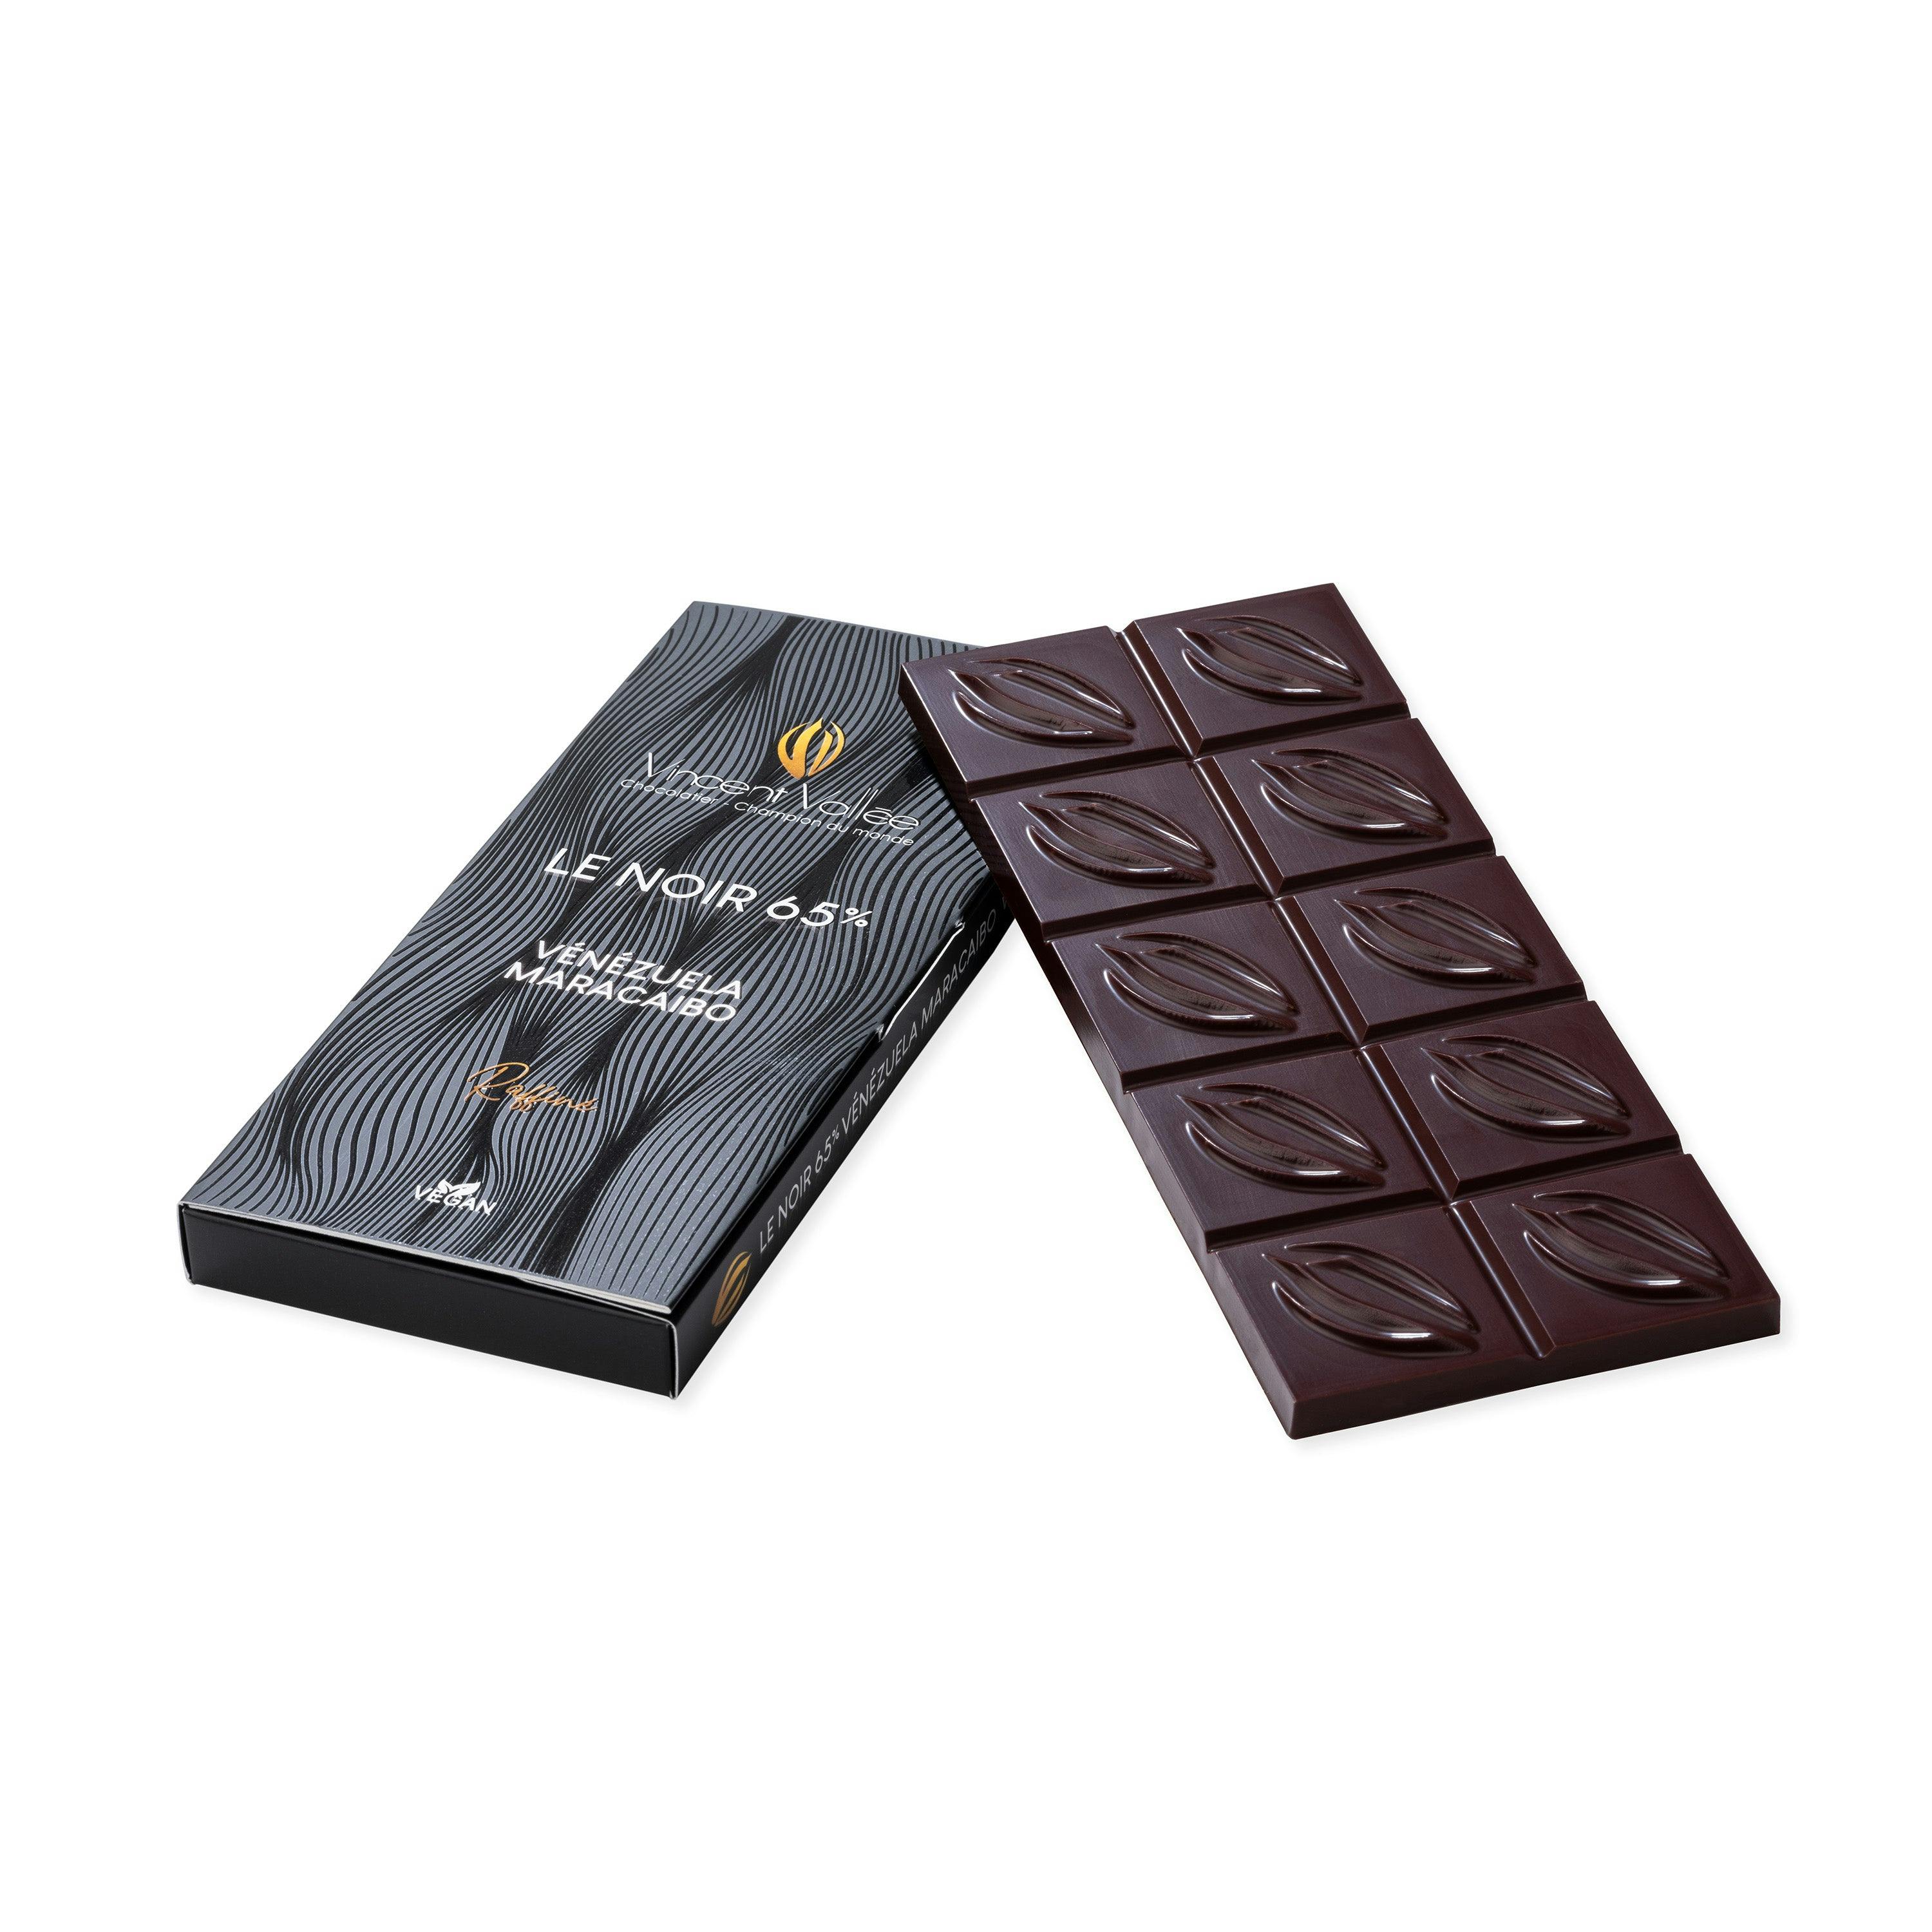 Maracaïbo 65% - Vincent Vallée chocolatier champion du monde